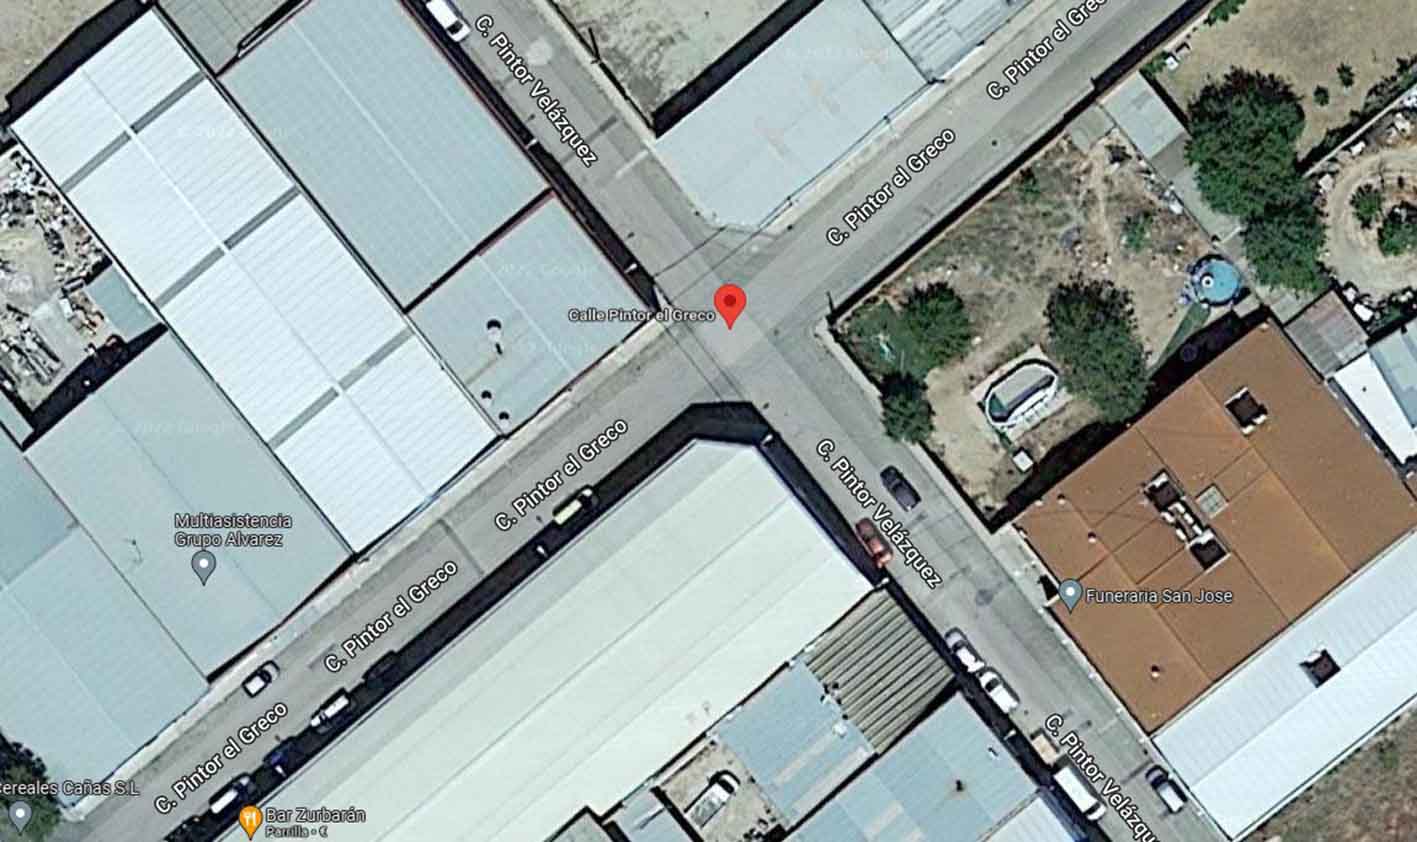 Calle Pintor el Greco, en Tomelloso, donde hubo un accidente laboral mortal. Imagen: Google Maps.